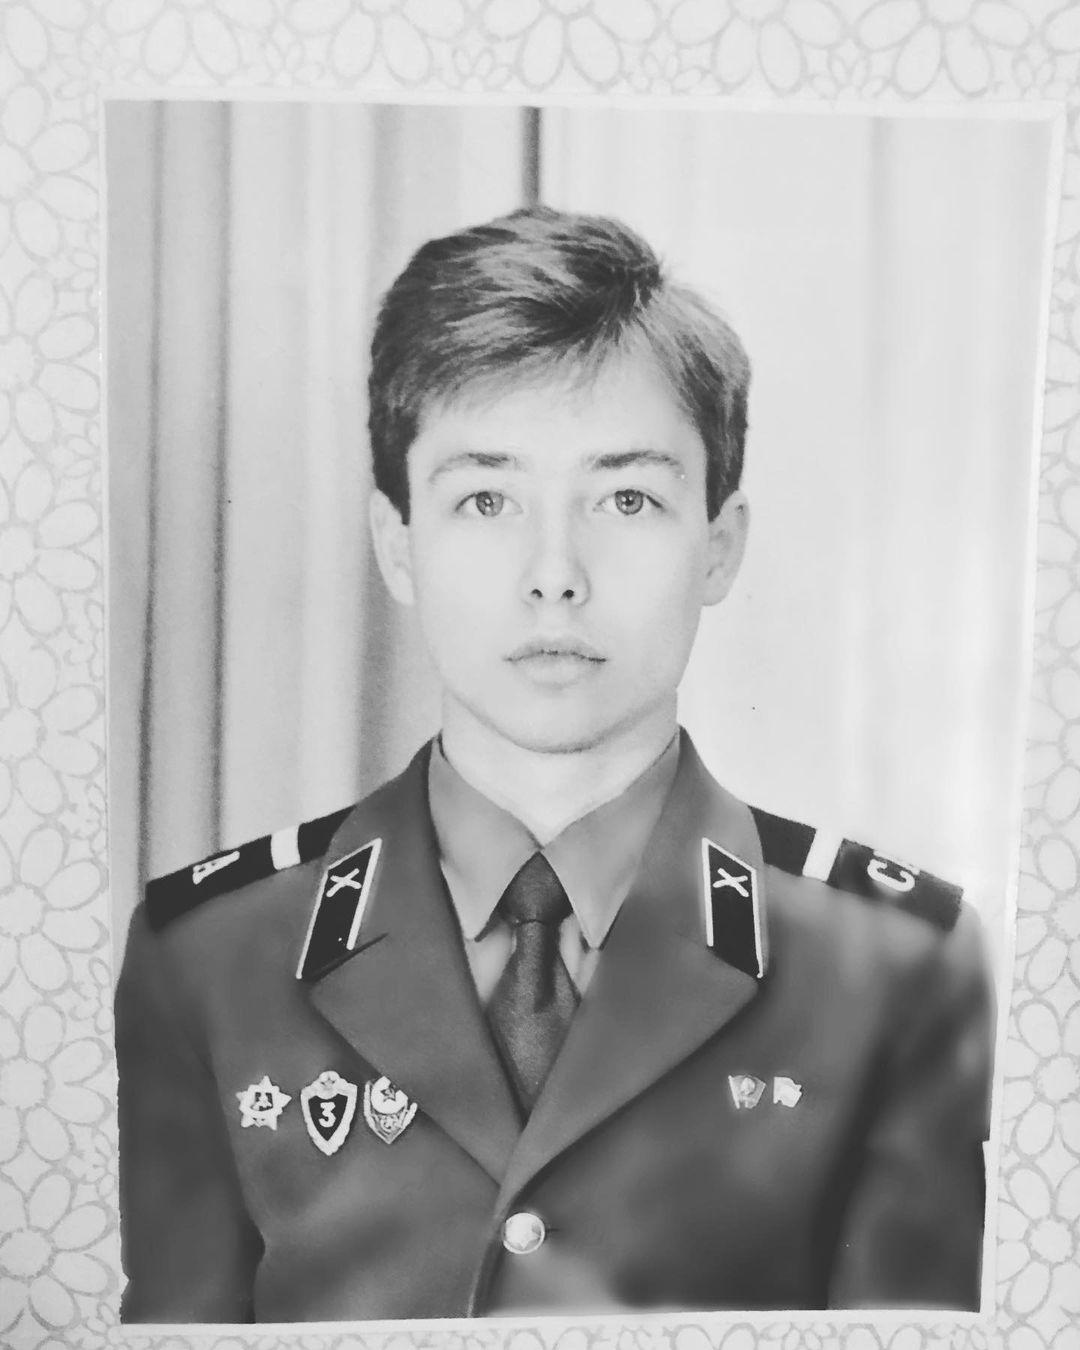 Сергей Зверев, Андрей Курпатов, Леонид Агутин и другие звезды, служившие в армии